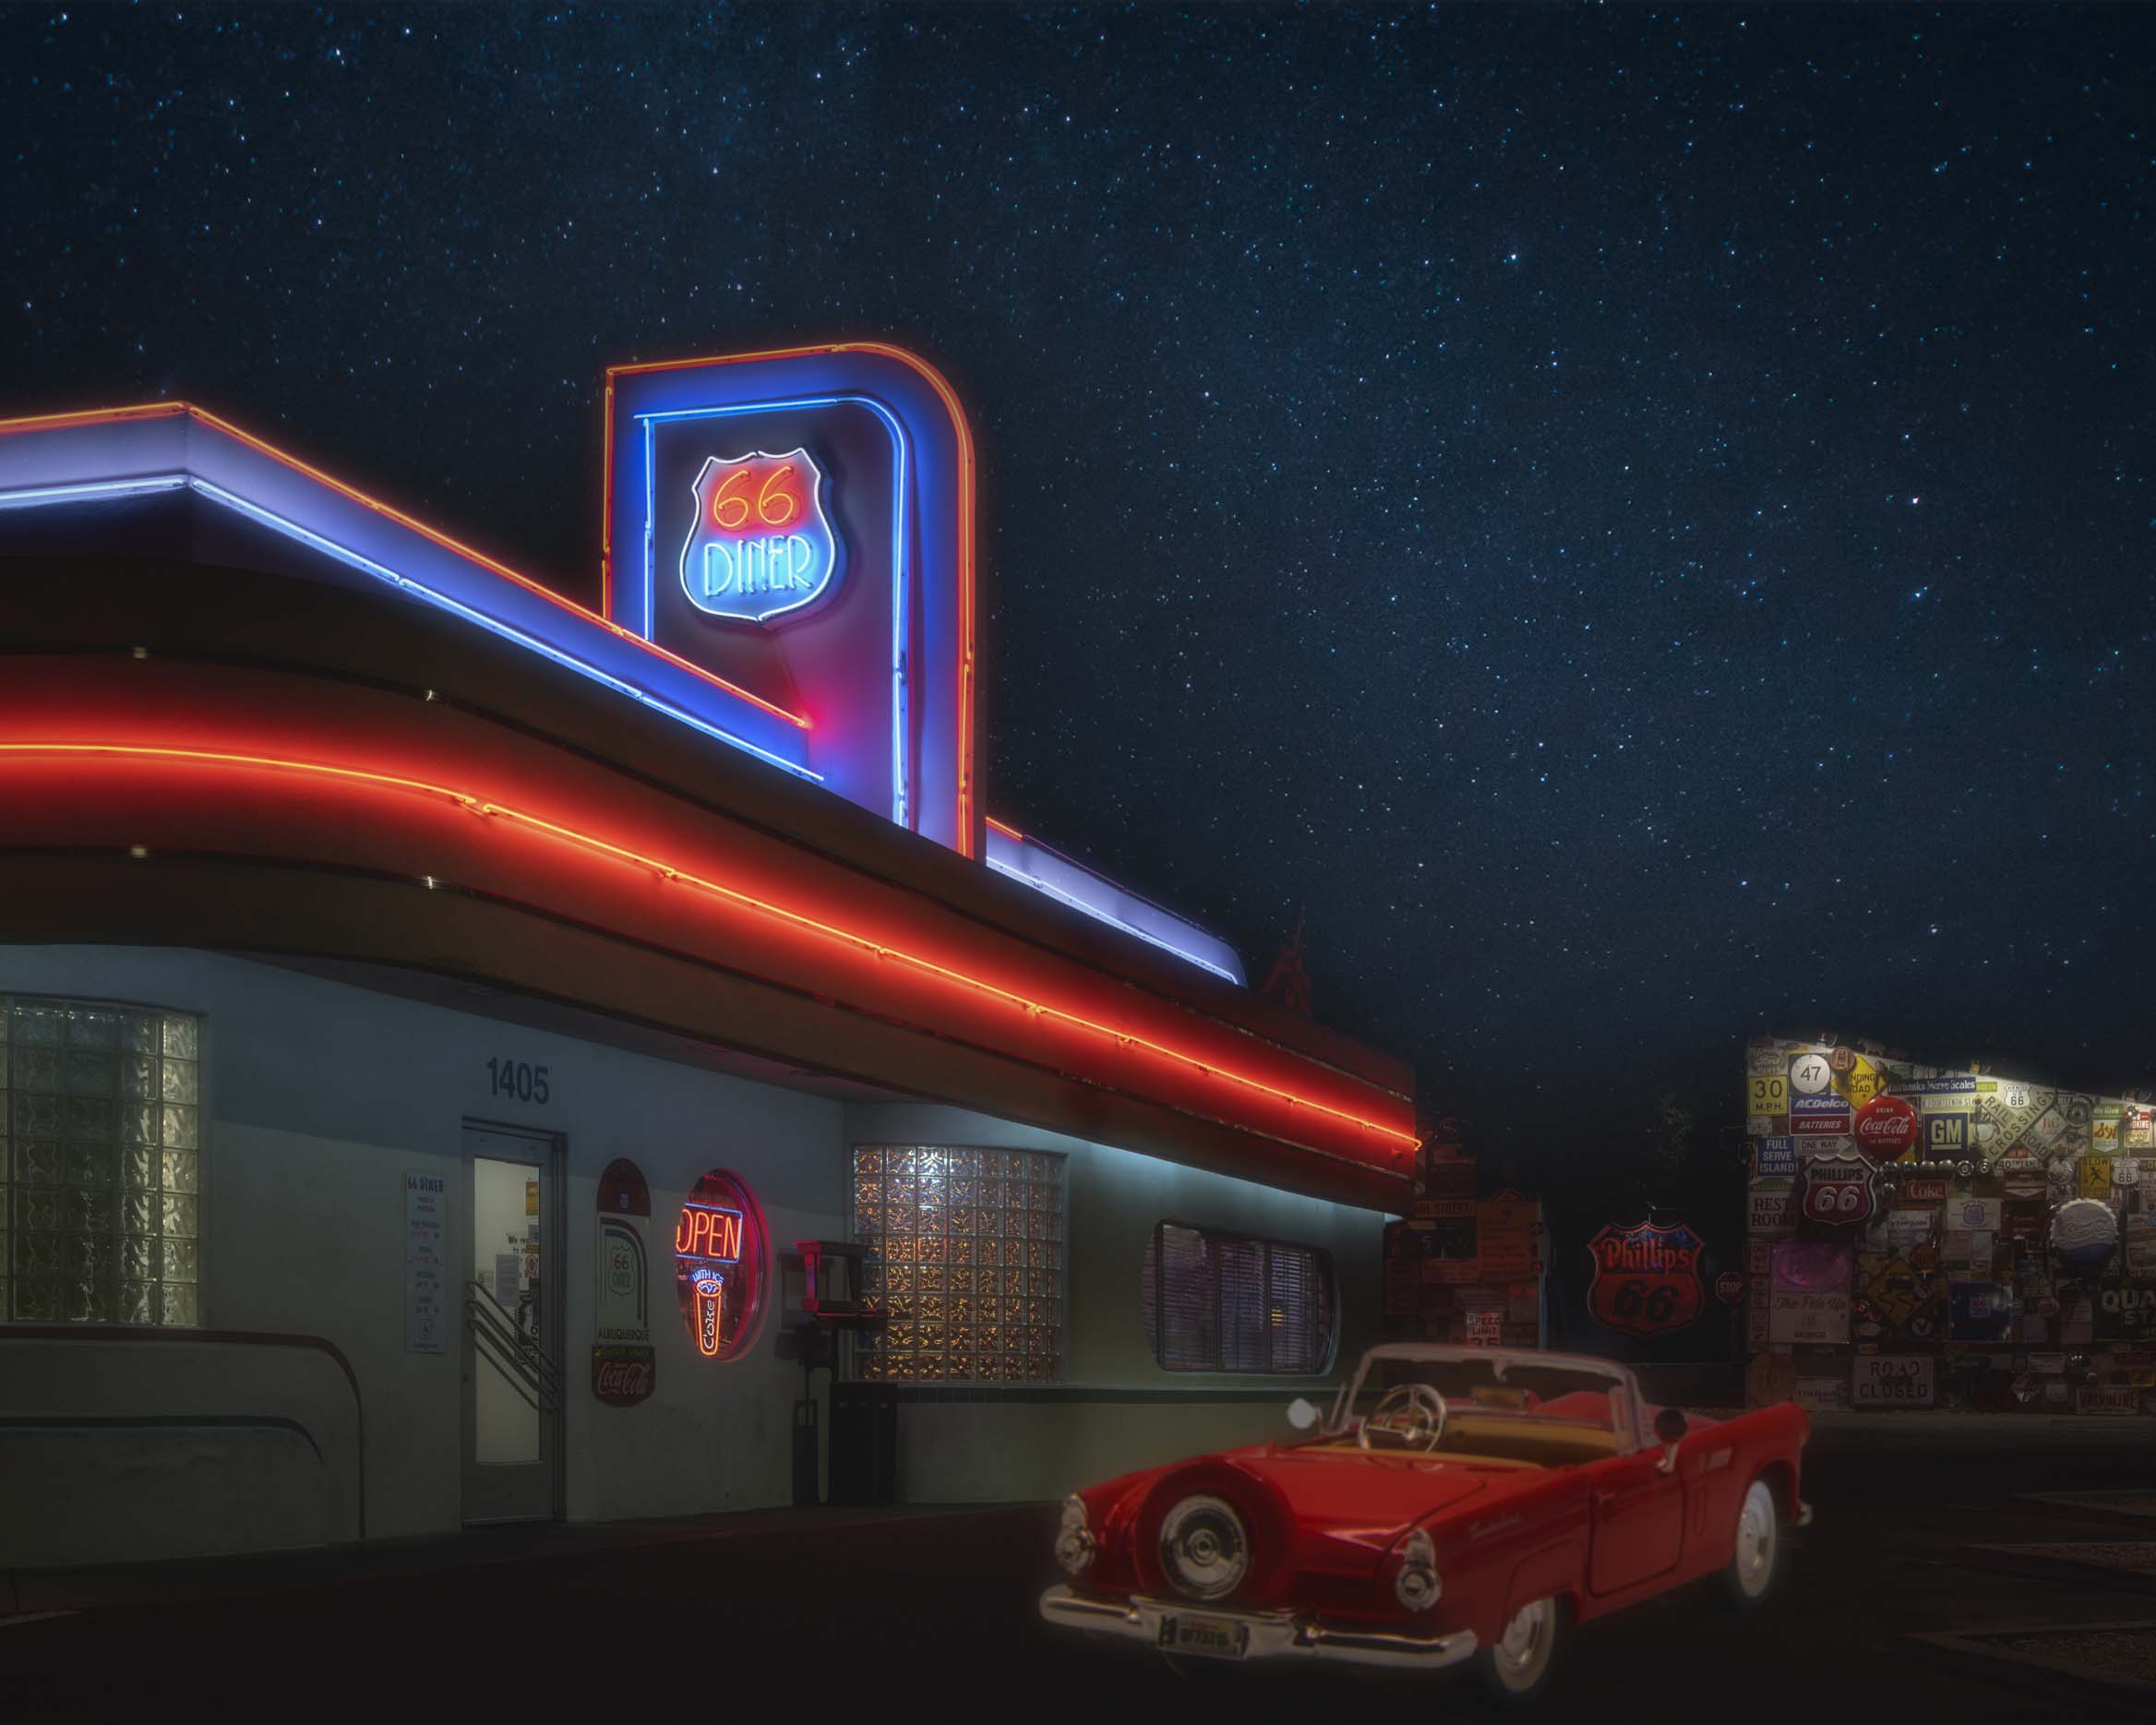 04x05_66-diner-with-car_landscape.jpg